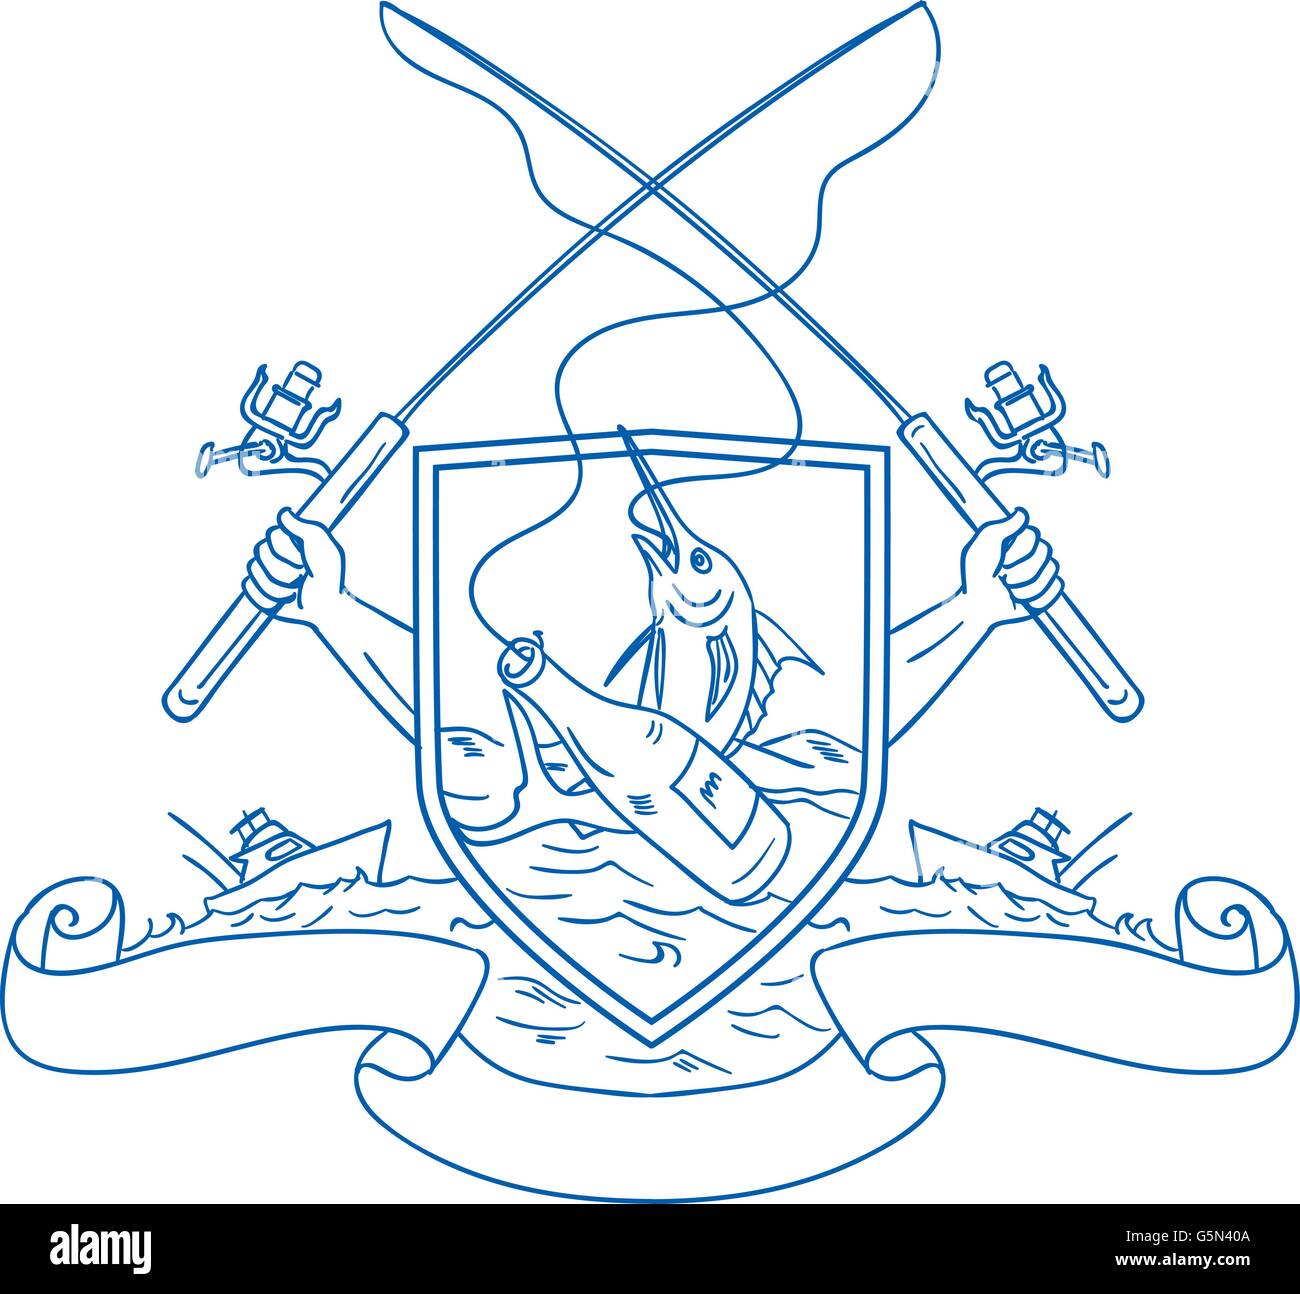 Croquis dessin illustration style de main tenant la canne à pêche et le moulinet de brancher une bouteille de bière et le makaire bleu avec du poisson de mer profonde Illustration de Vecteur